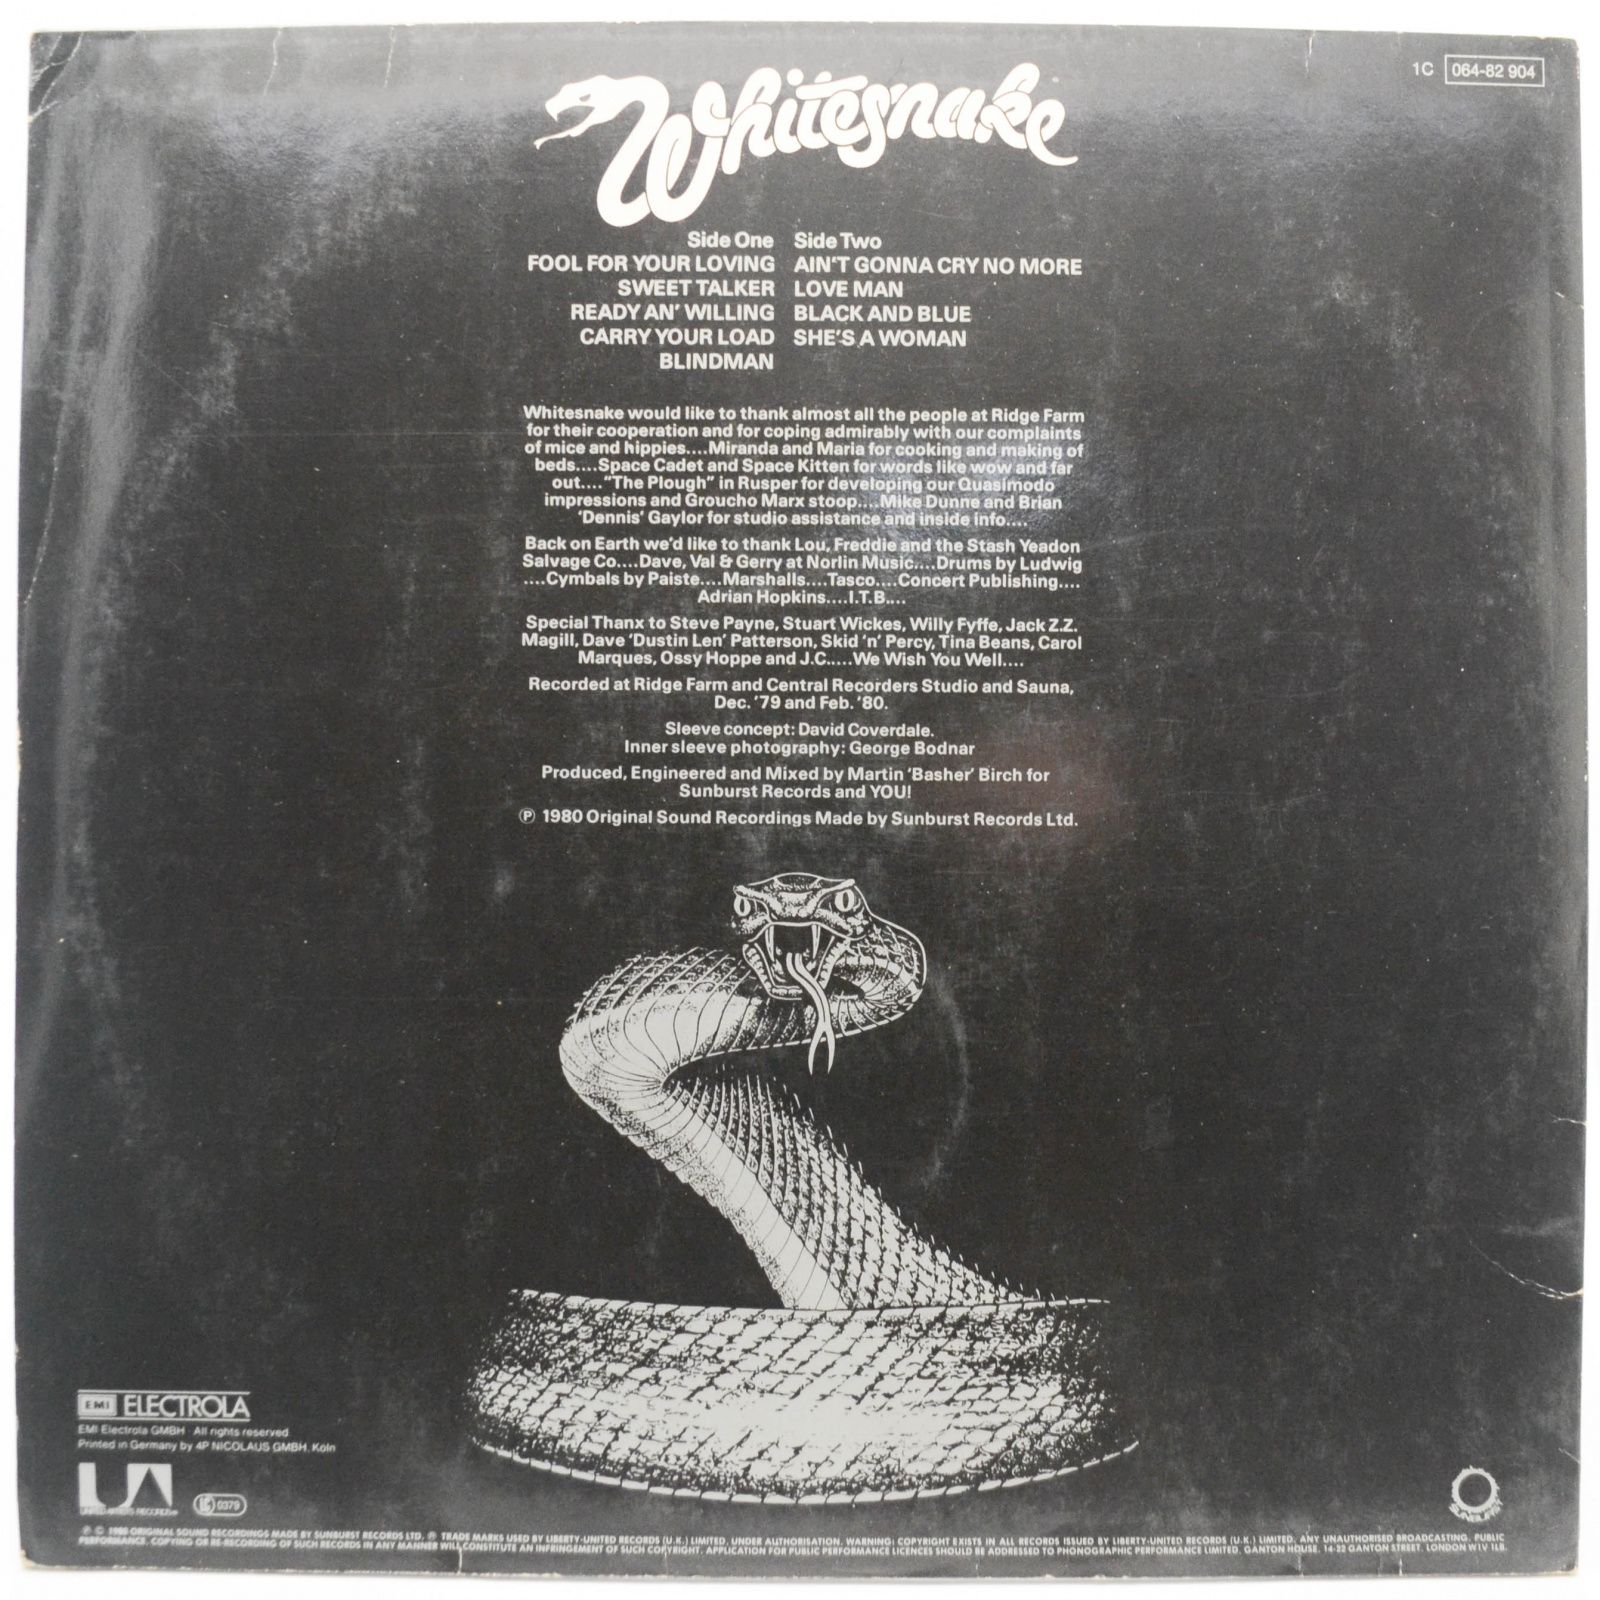 Whitesnake — Ready An' Willing, 1980